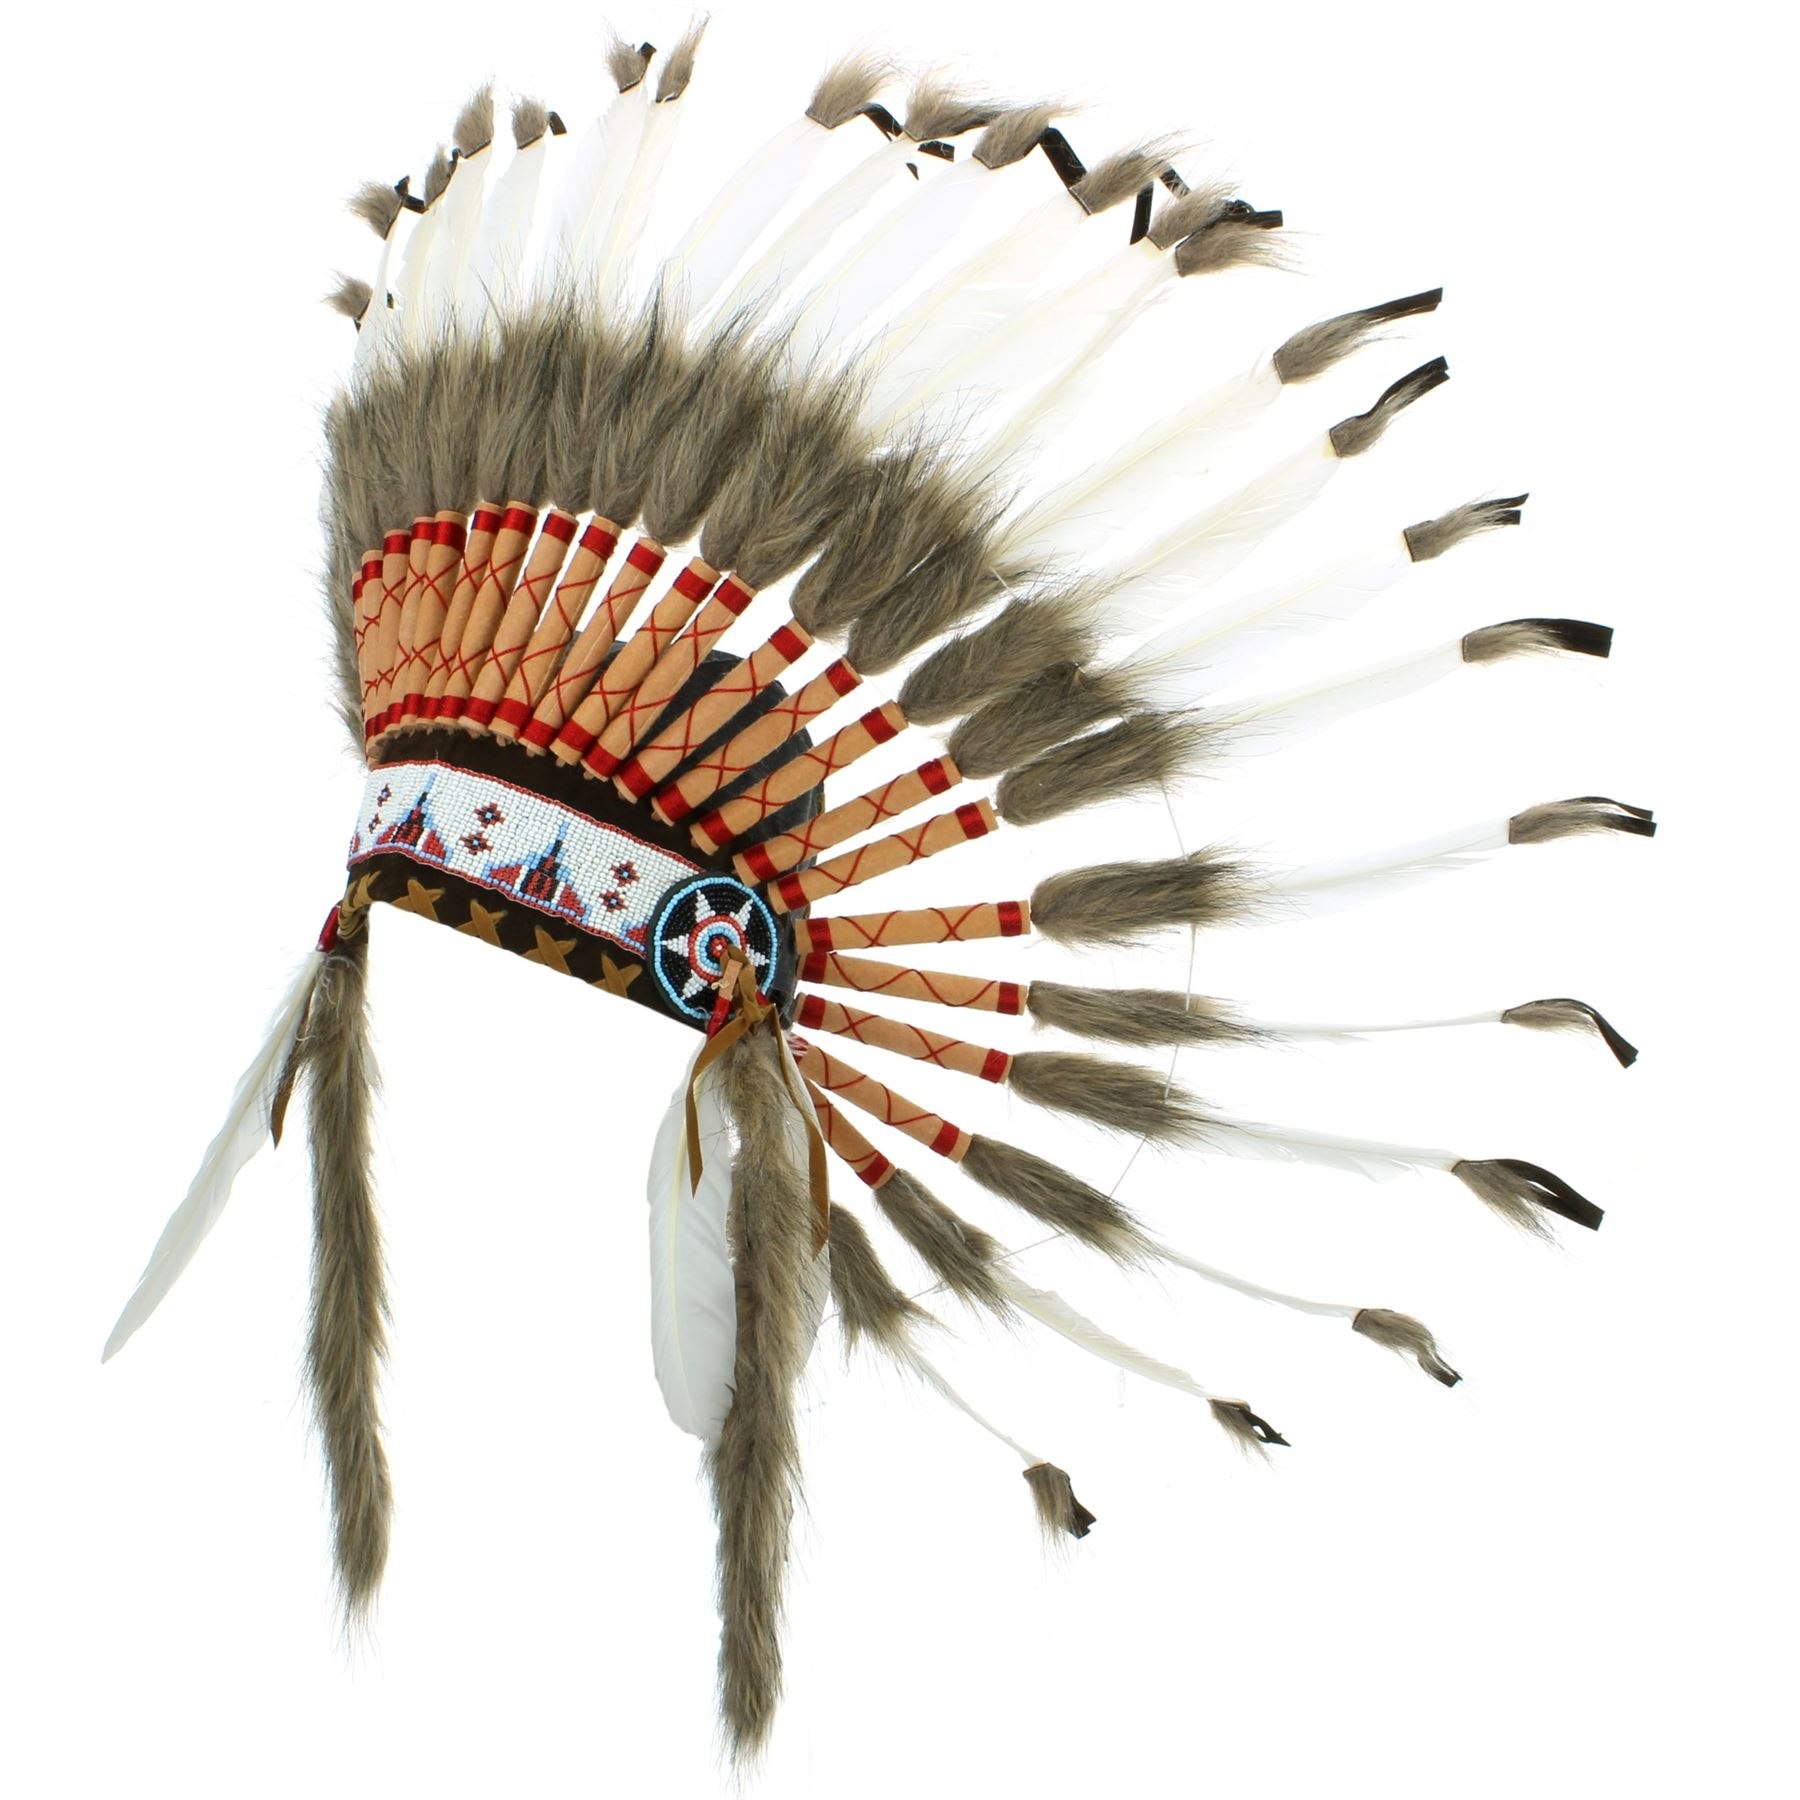 Индеец 7 букв сканворд. Индейский Роуч. Головной убор индейца Роуч. Головные уборы индейцев Северной Америки. Церемониальный костюм индейцев Калифорнии из перьев ворона.